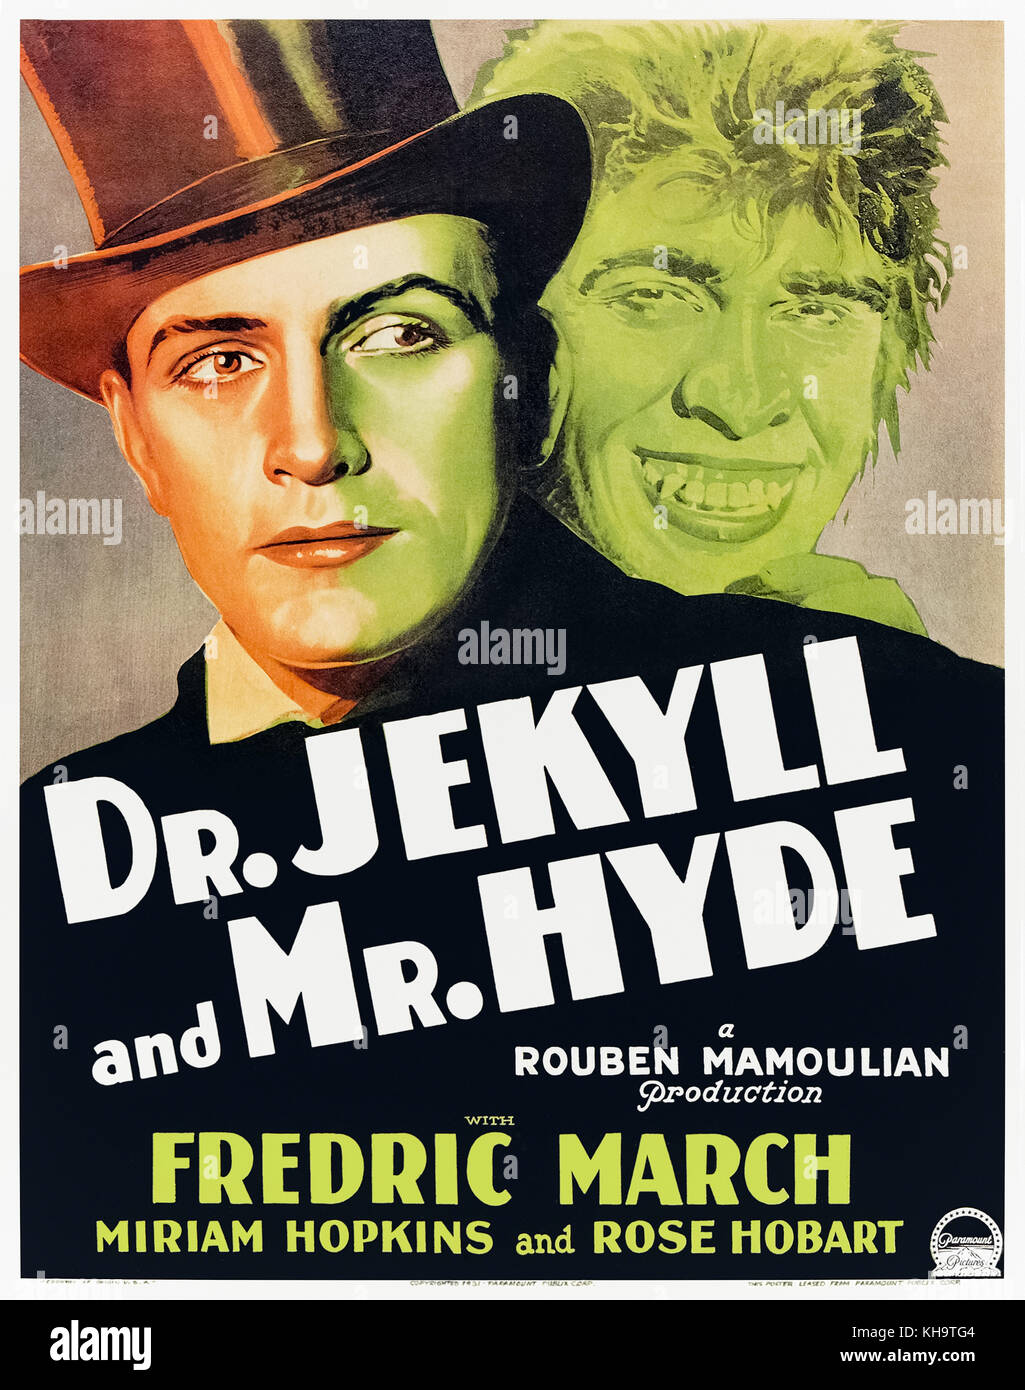 Dr. Jekyll und Mr. Hyde (1931) unter der Regie von Rouben Mamoulian und Hauptdarsteller Fredric März, Miriam Hopkins und Rose Hobart. Fredric März gewann einen Academy Award für den besten Schauspieler für seine Darstellung des Dr. Jekyll und seine unkontrollierbaren Alter Ego Mr Hyde. Stockfoto